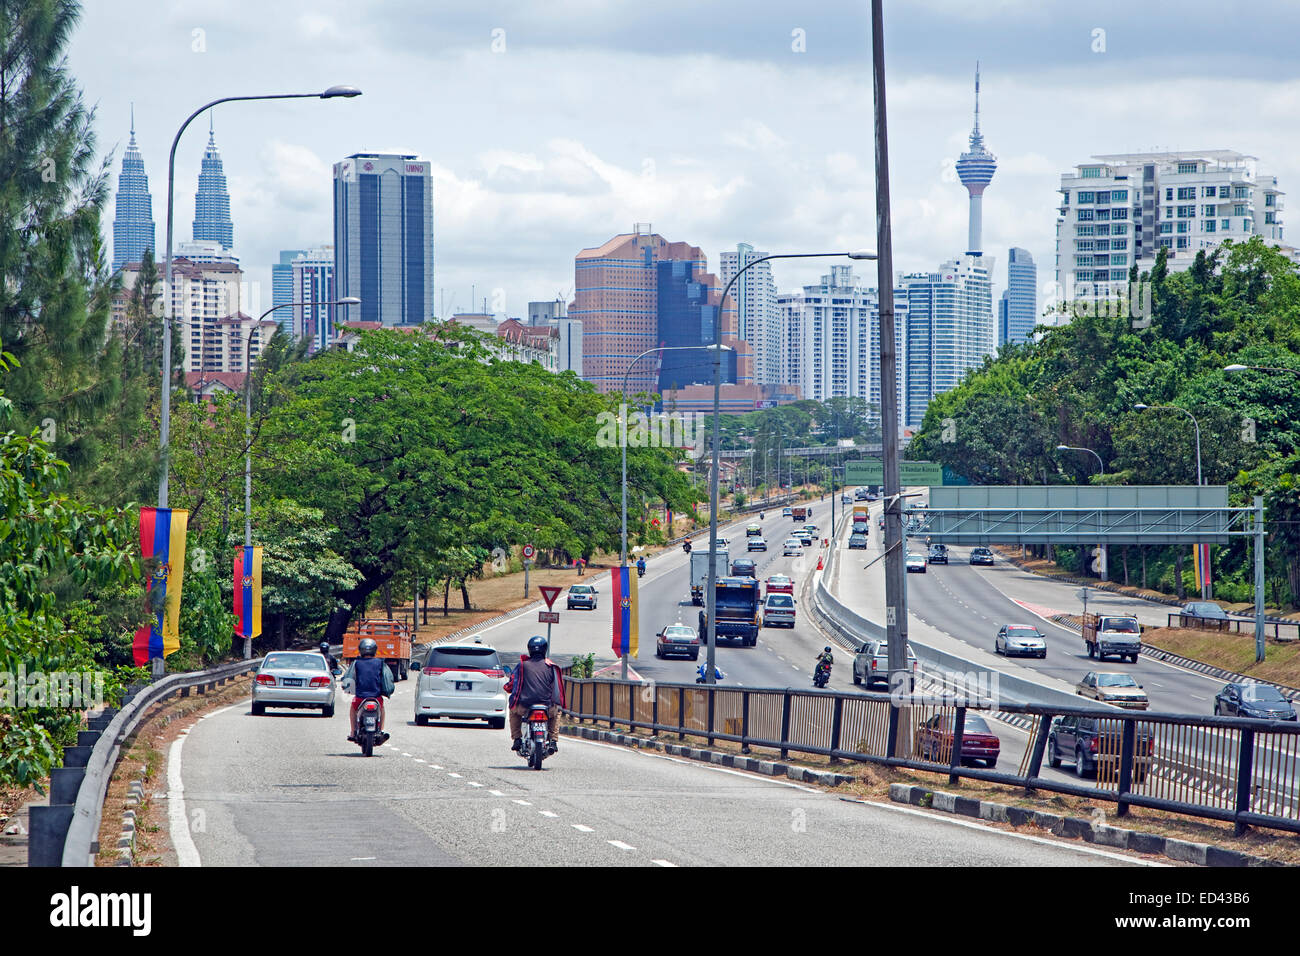 L'autoroute entrant dans la ville Kuala Lumpur avec vue sur les tours jumelles Petronas et de la tour Menara, Malaisie Banque D'Images